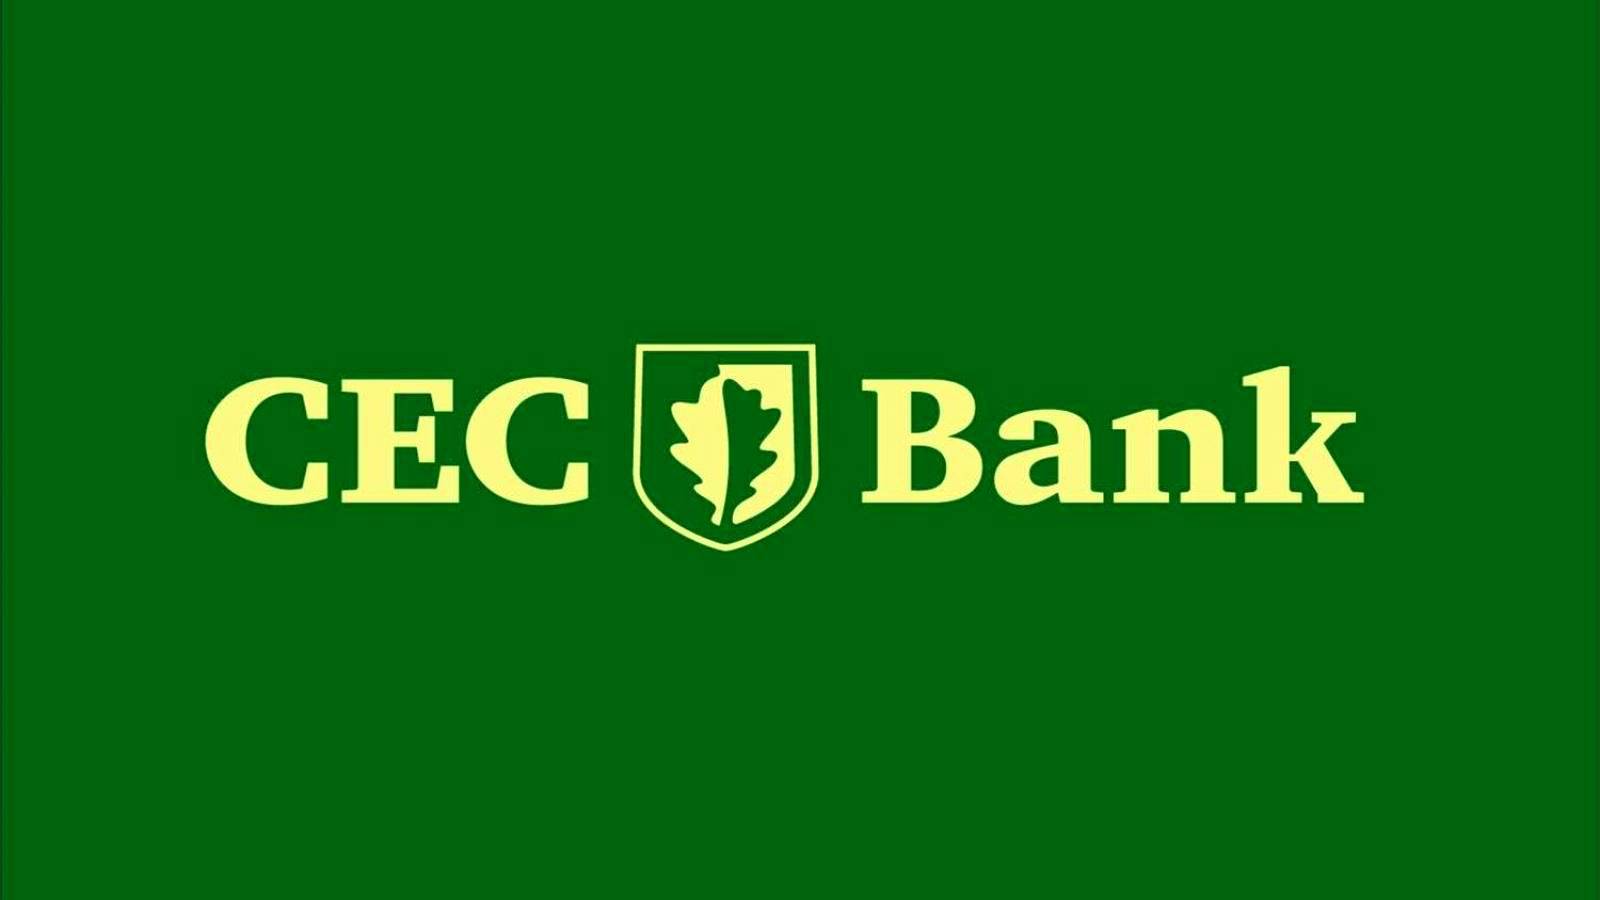 Notification de la mesure majeure de la banque CEC officiellement confirmée à tous les clients